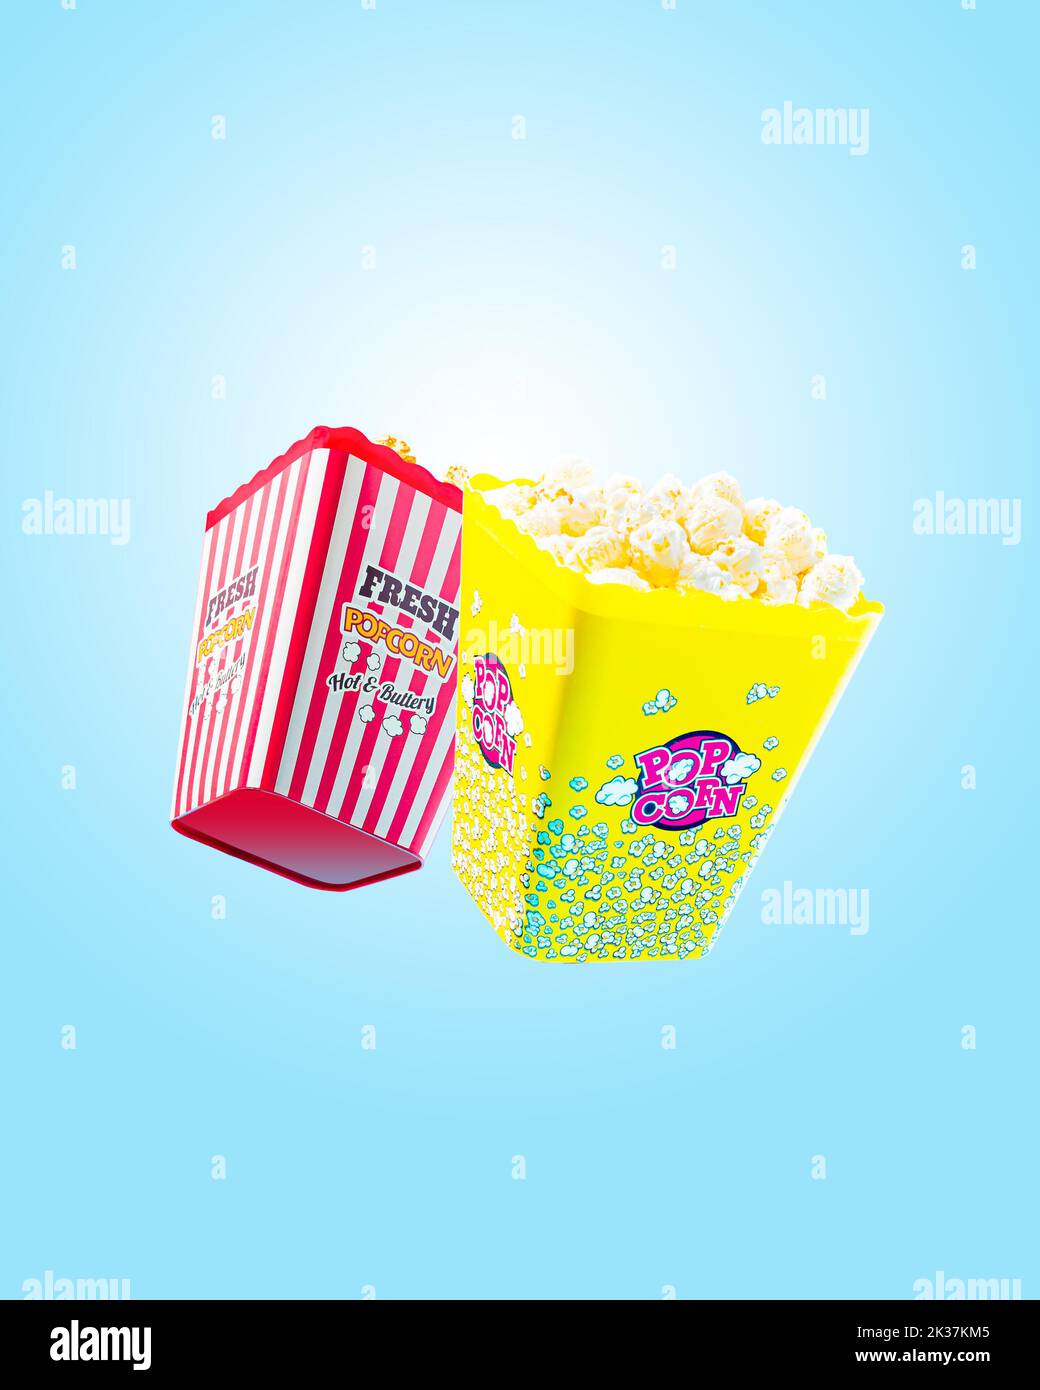 Deux grandes portions de pop-corn frais et chaud avec beurre et caramel sur fond bleu clair. Bannière poster Movie Night concept. Banque D'Images